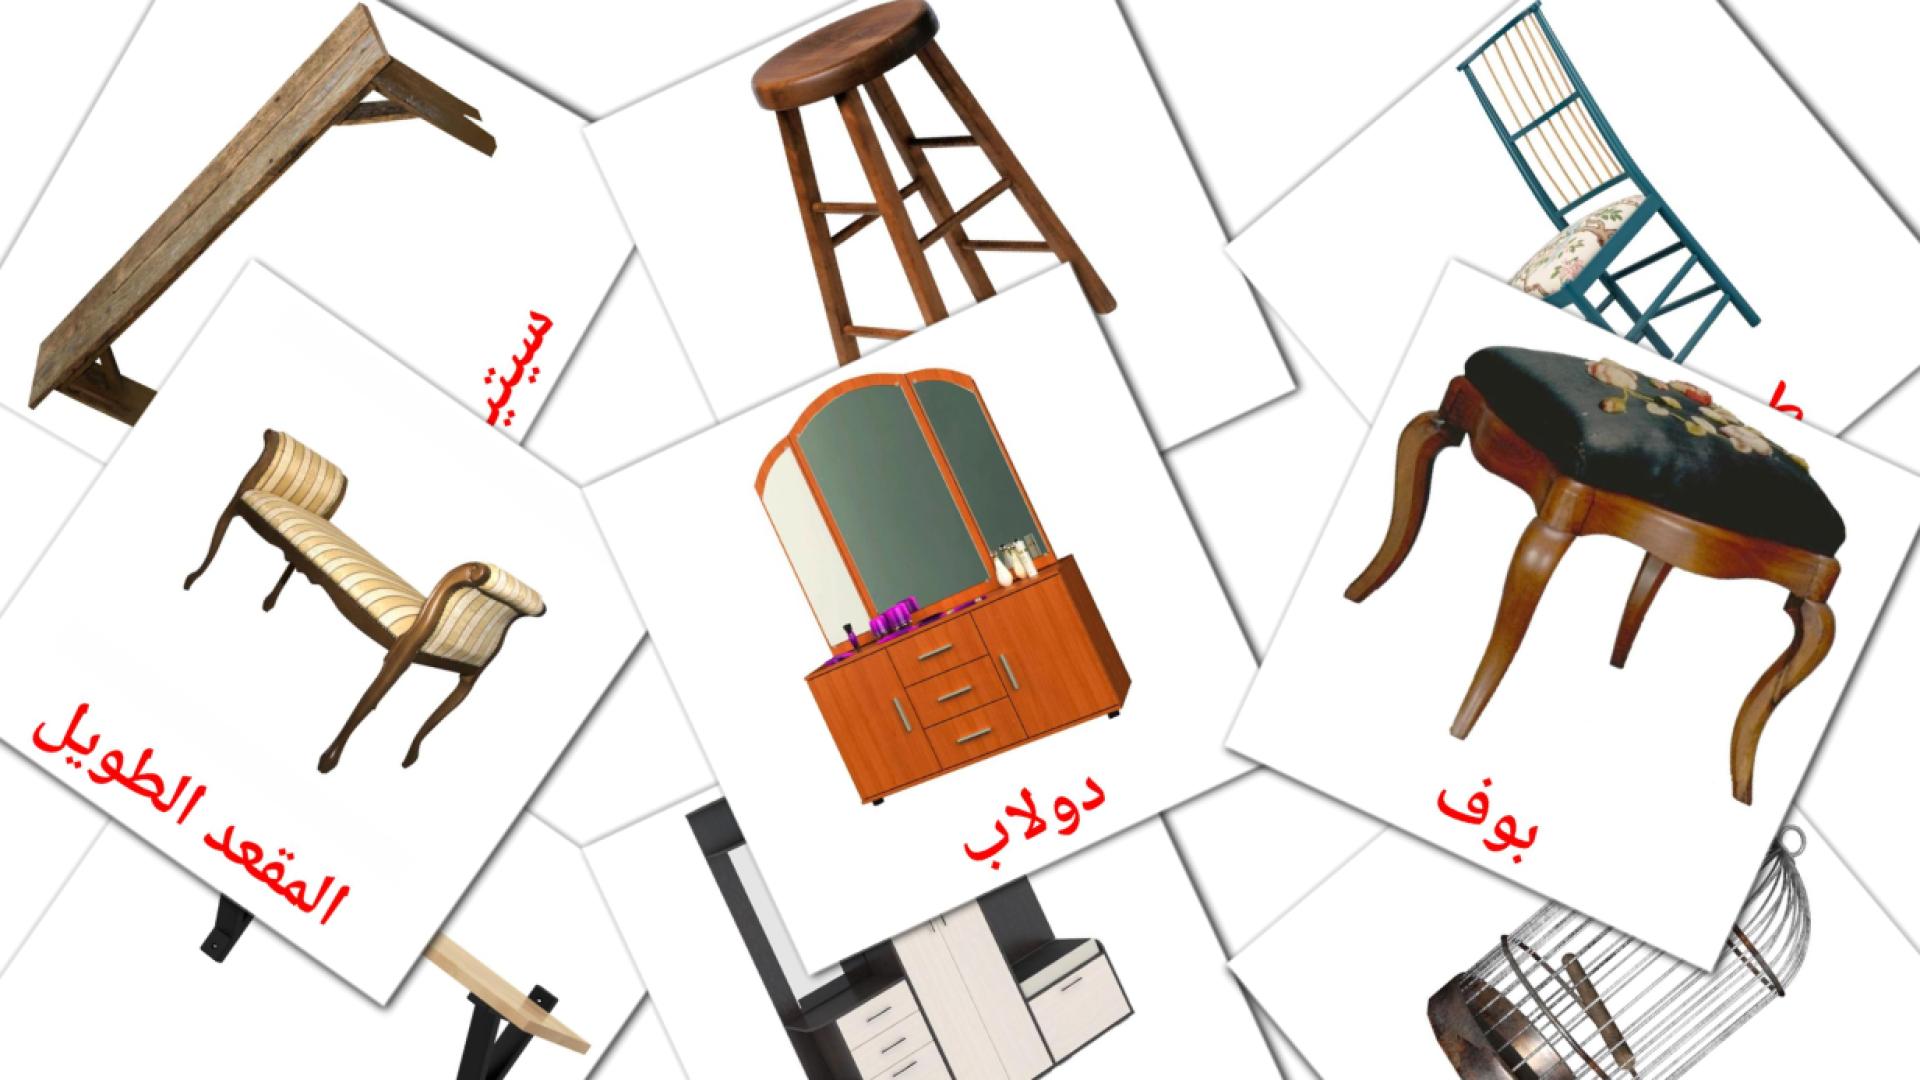 Möbel - Arabisch Vokabelkarten